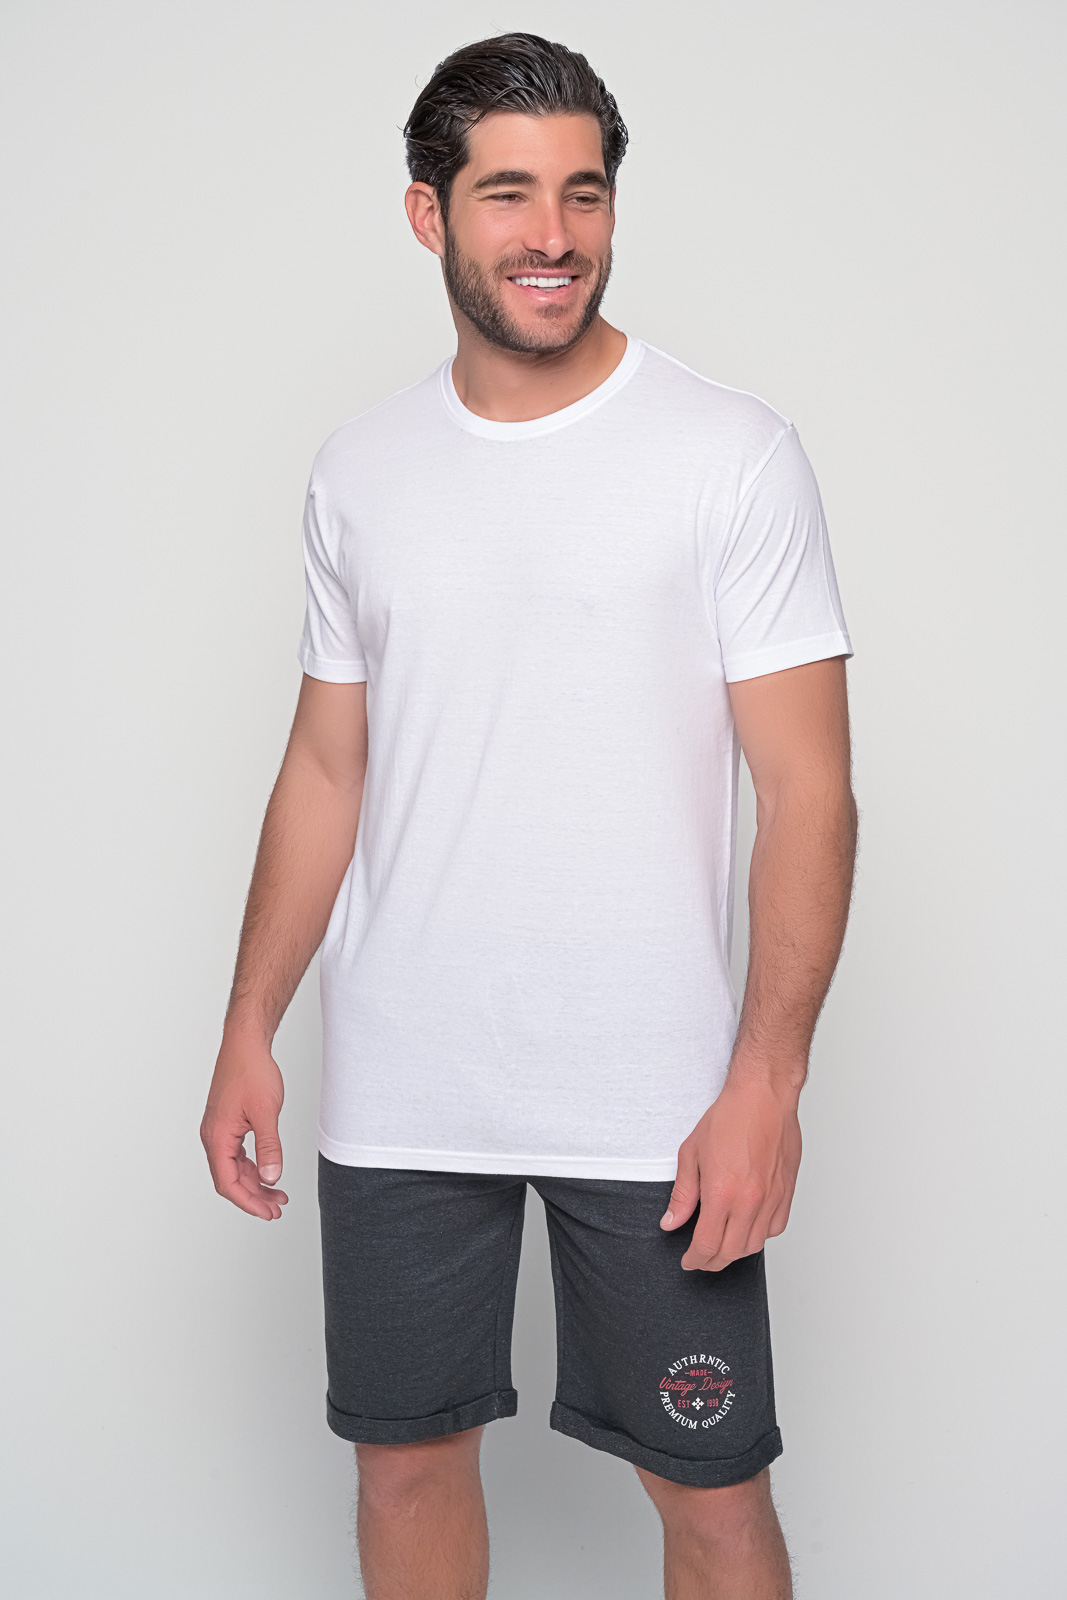 Μπλουζακι ανδρικο μονόχρωμο, λαιμόκοψη, κοντομάνικο σε διάφορα μεγέθη και χρώματα. T-Shirt Ανδρικό | Metropolisfashioncity.gr